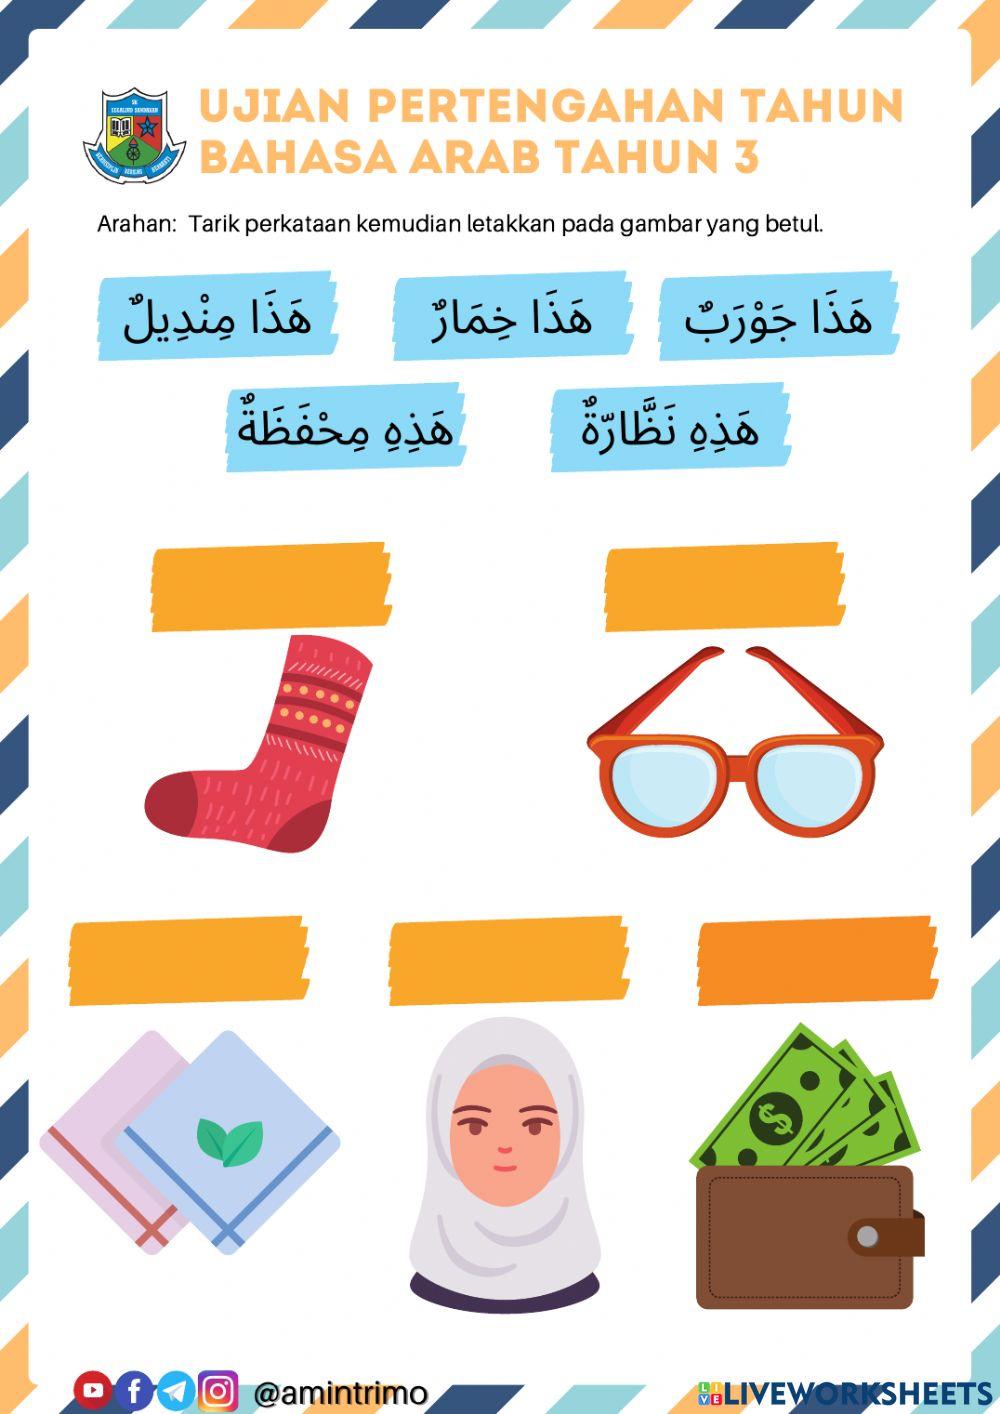 Ujian pertengahan tahun bahasa arab tahun 3 2021